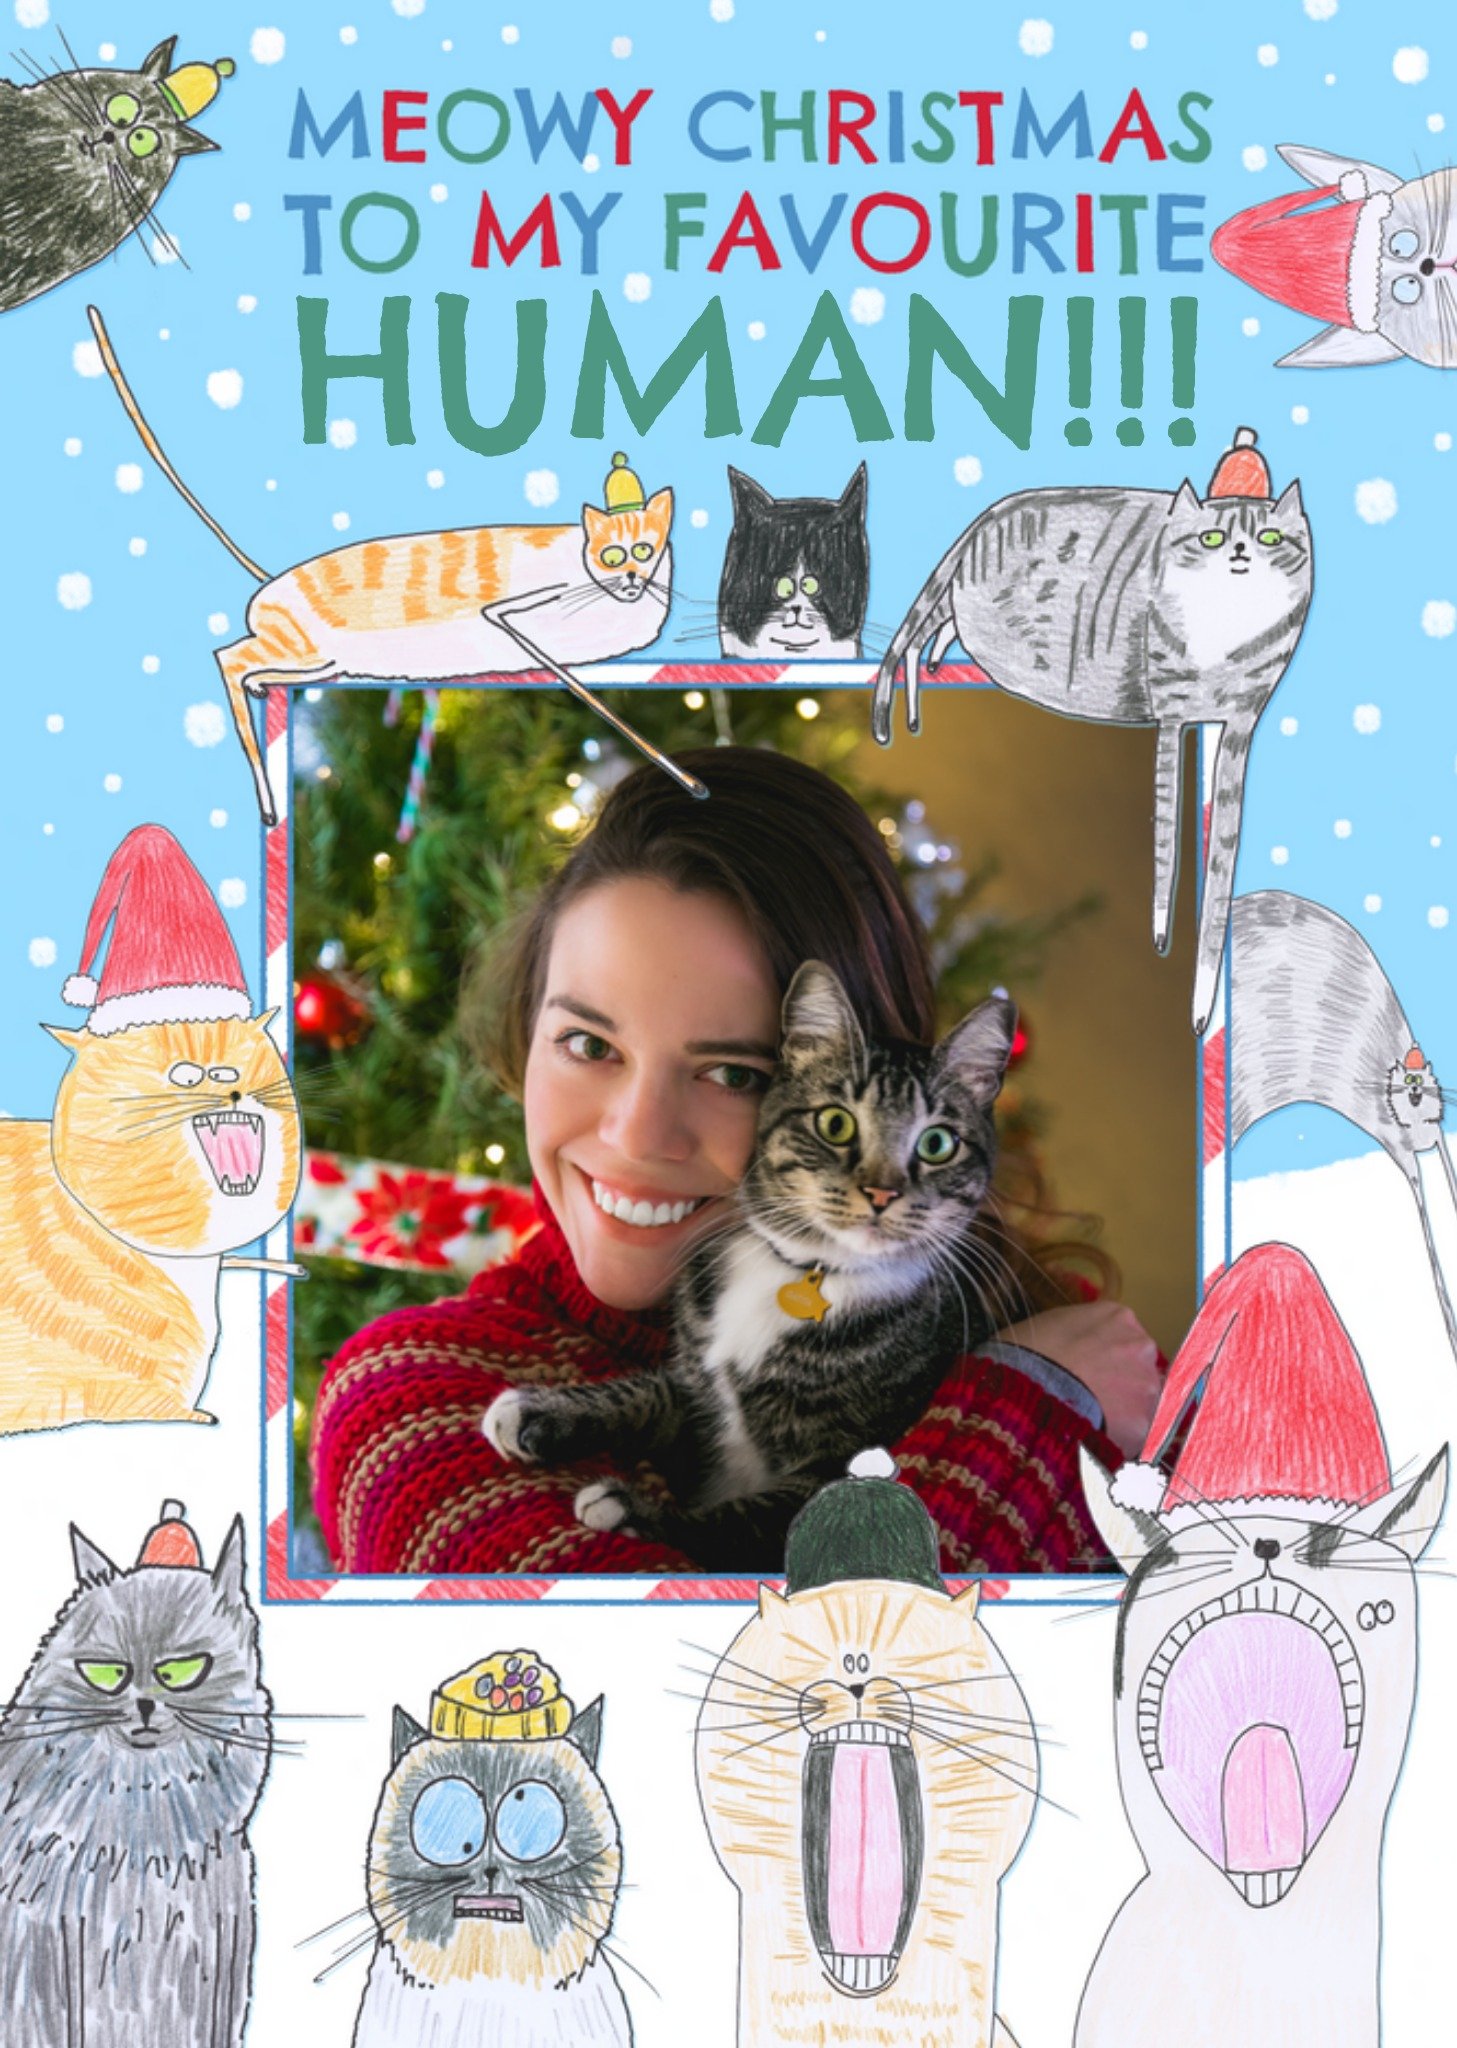 Hercule Van Wolfwinkle Meowy Christmas To My Favourite Human Photo Upload Card, Large